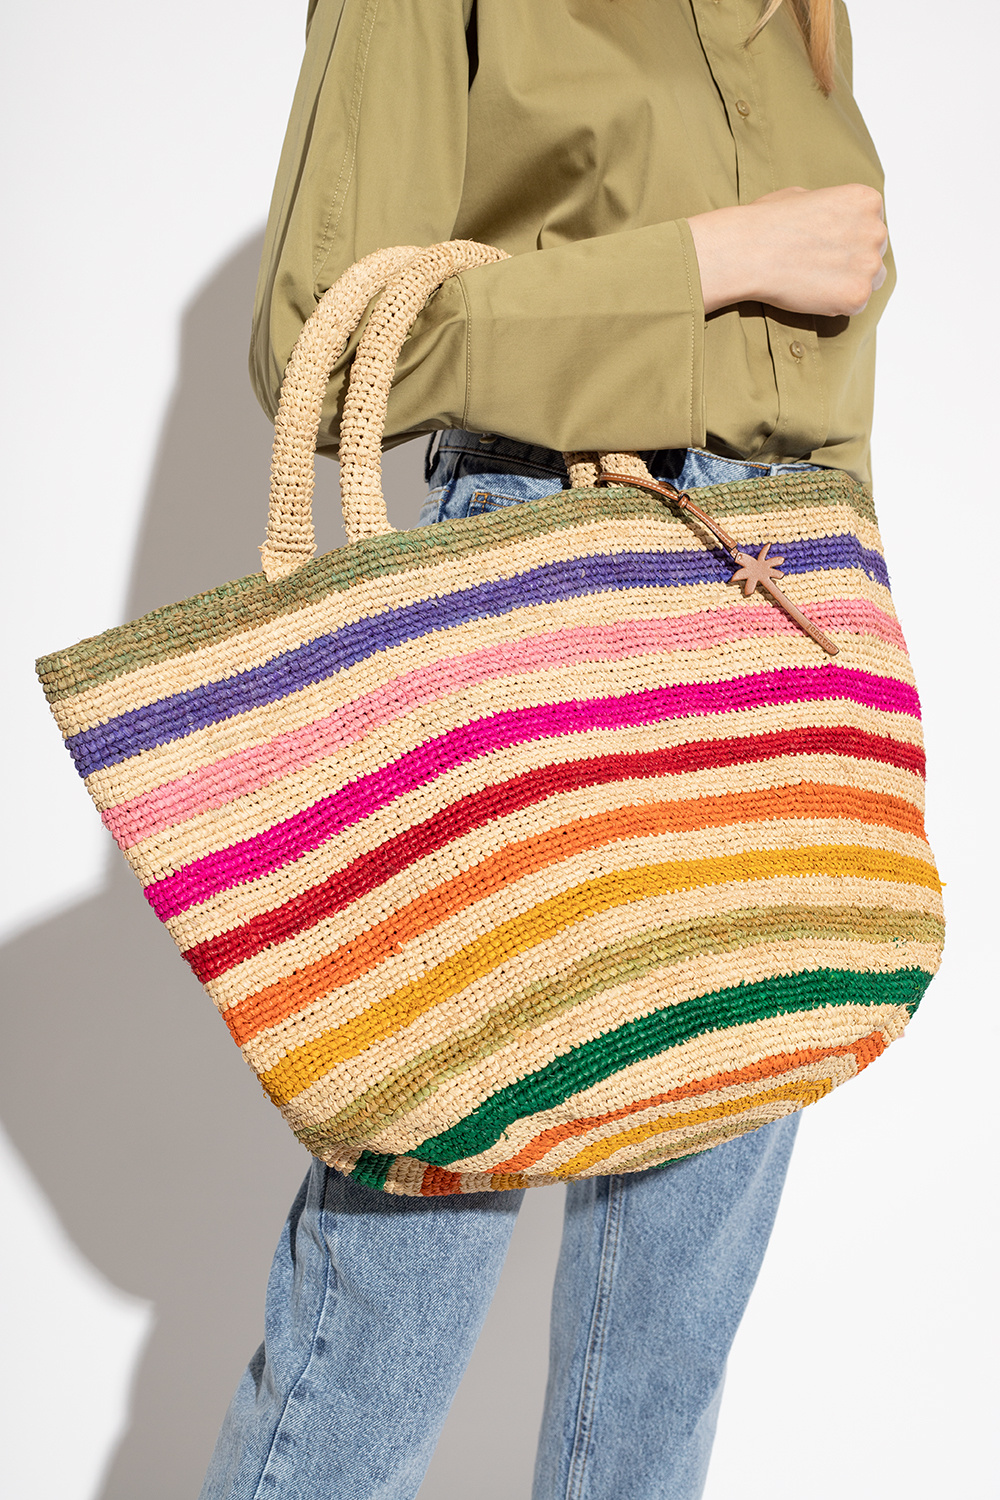 Manebí ‘Summer’ shopper bag | Women's Bags | Vitkac